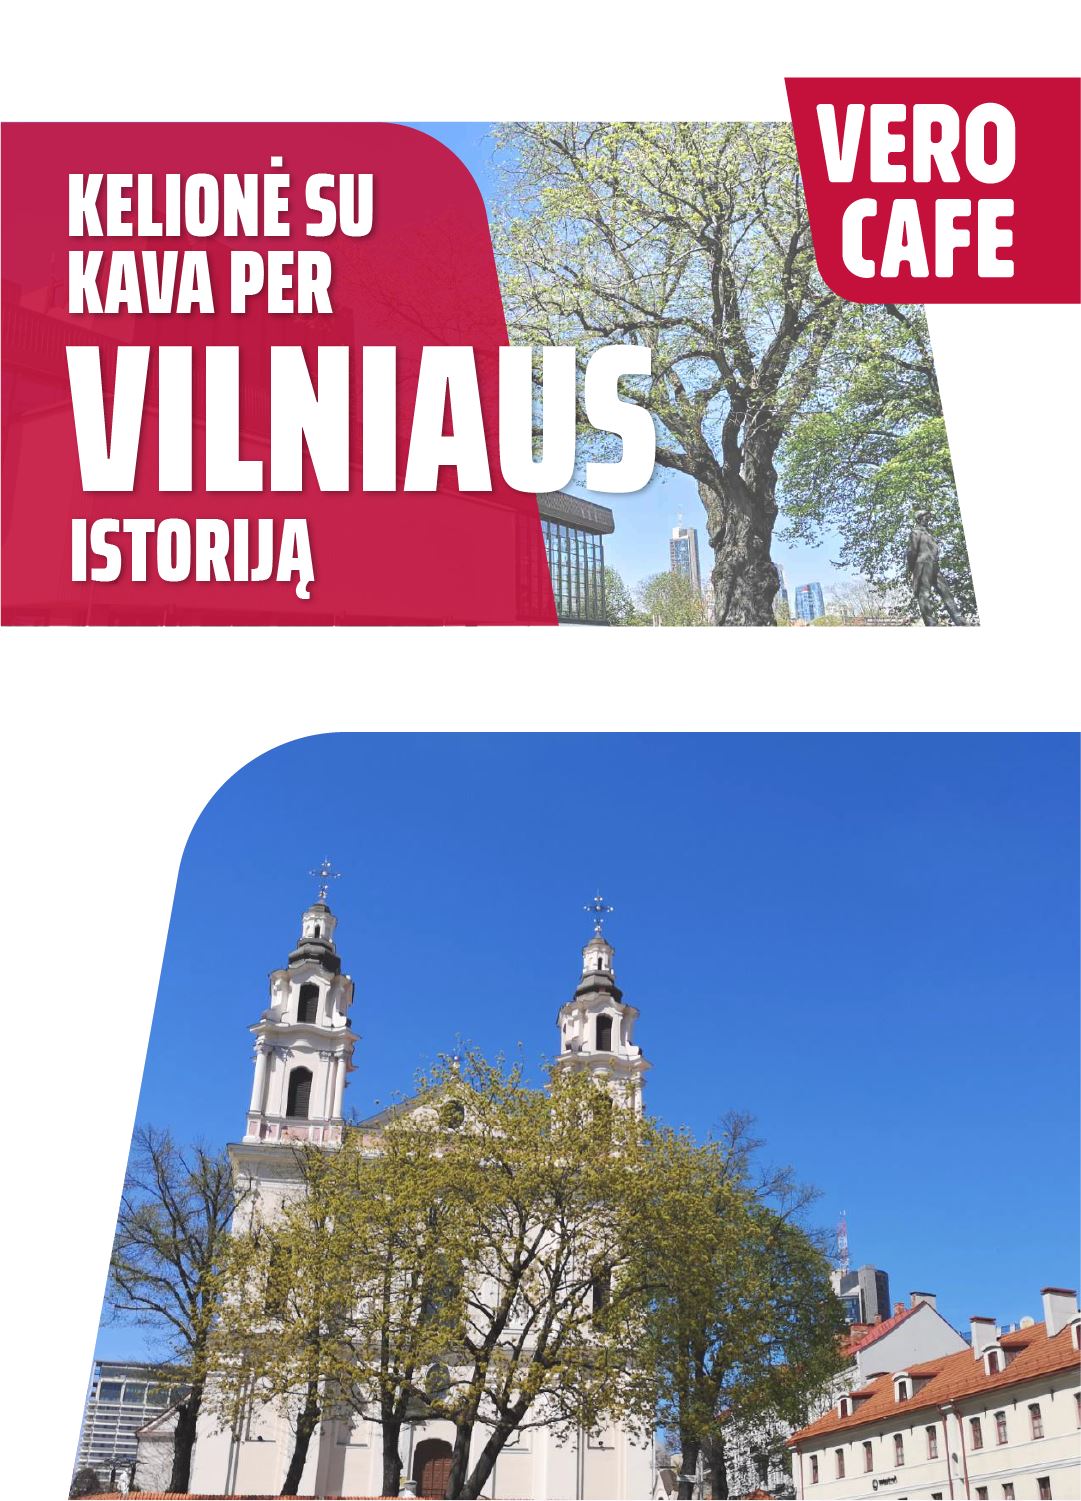 VERO CAFE / Vilniaus g. - Neries krantinė